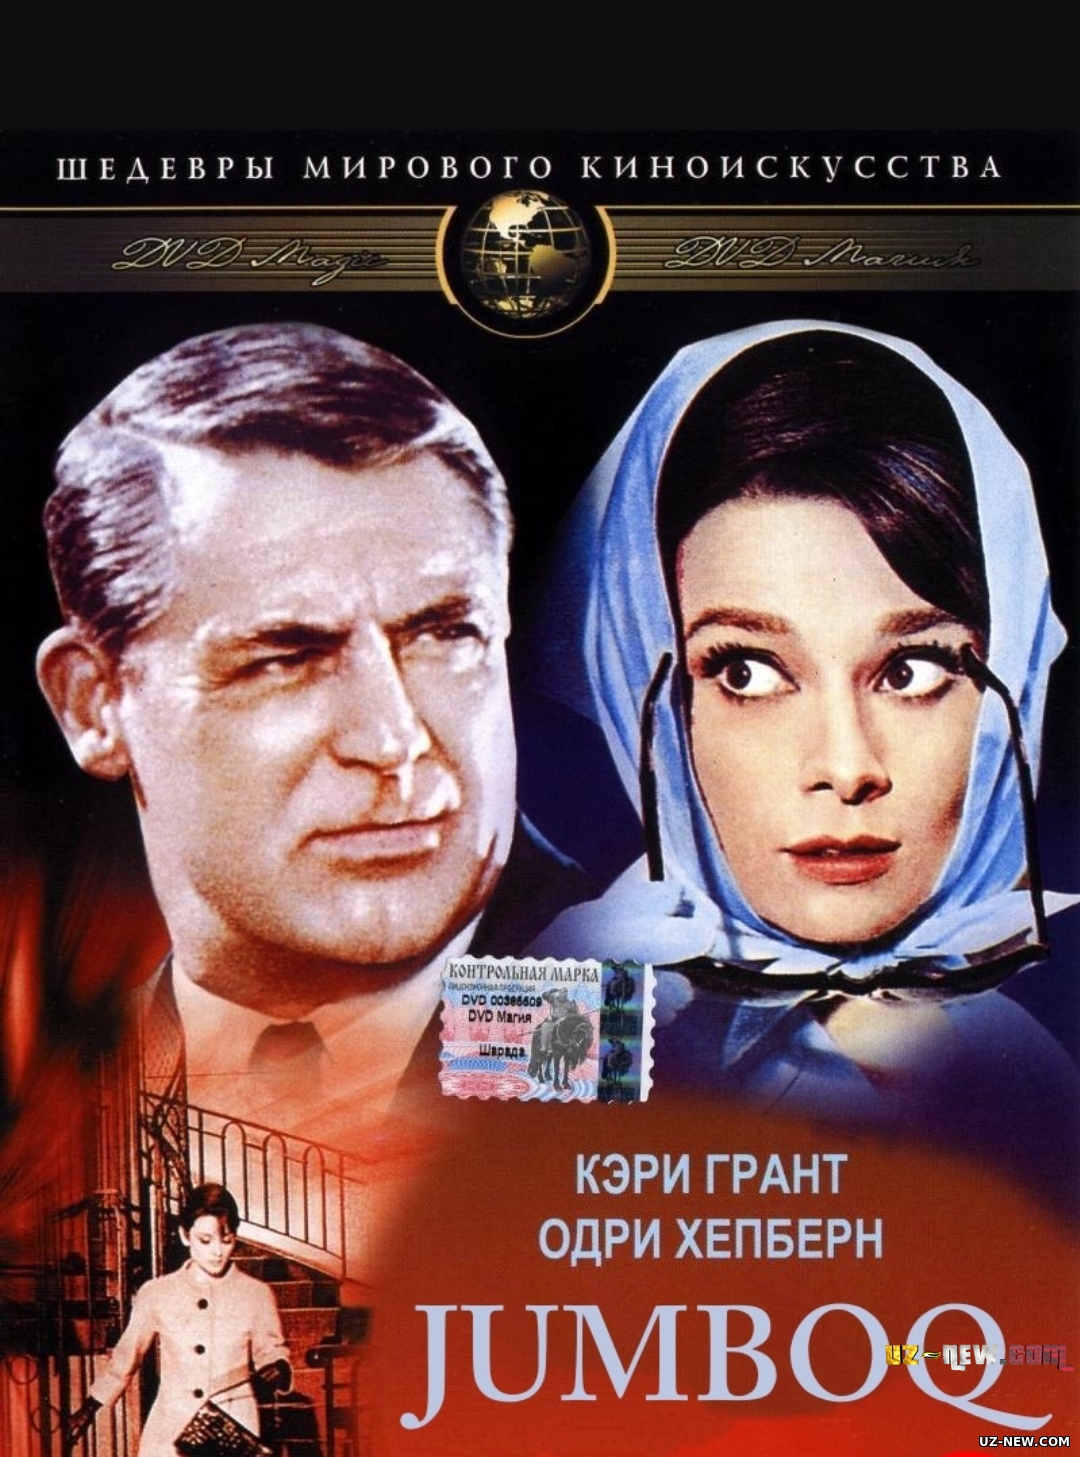 Jumboq (Komediya, Triller, Drama janrida) Uzbek tilida O'zbekcha 1963